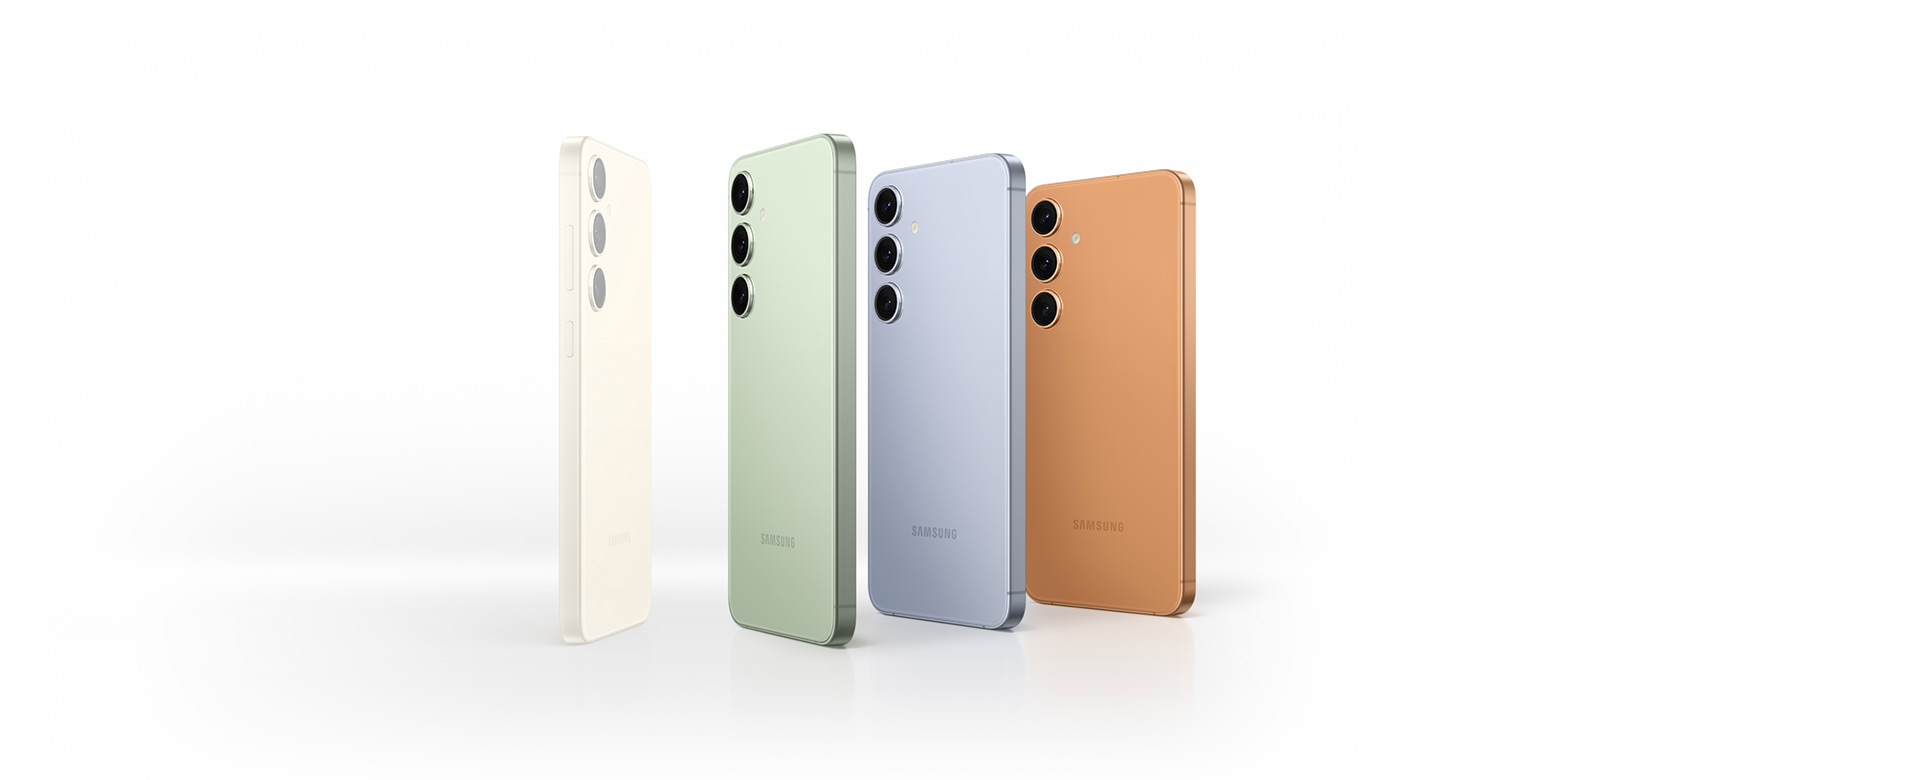 Les smartphones de la gamme Galaxy S24 Series sont disponibles en couleur crème, puis en couleurs exclusives en ligne : vert, bleu et orange.